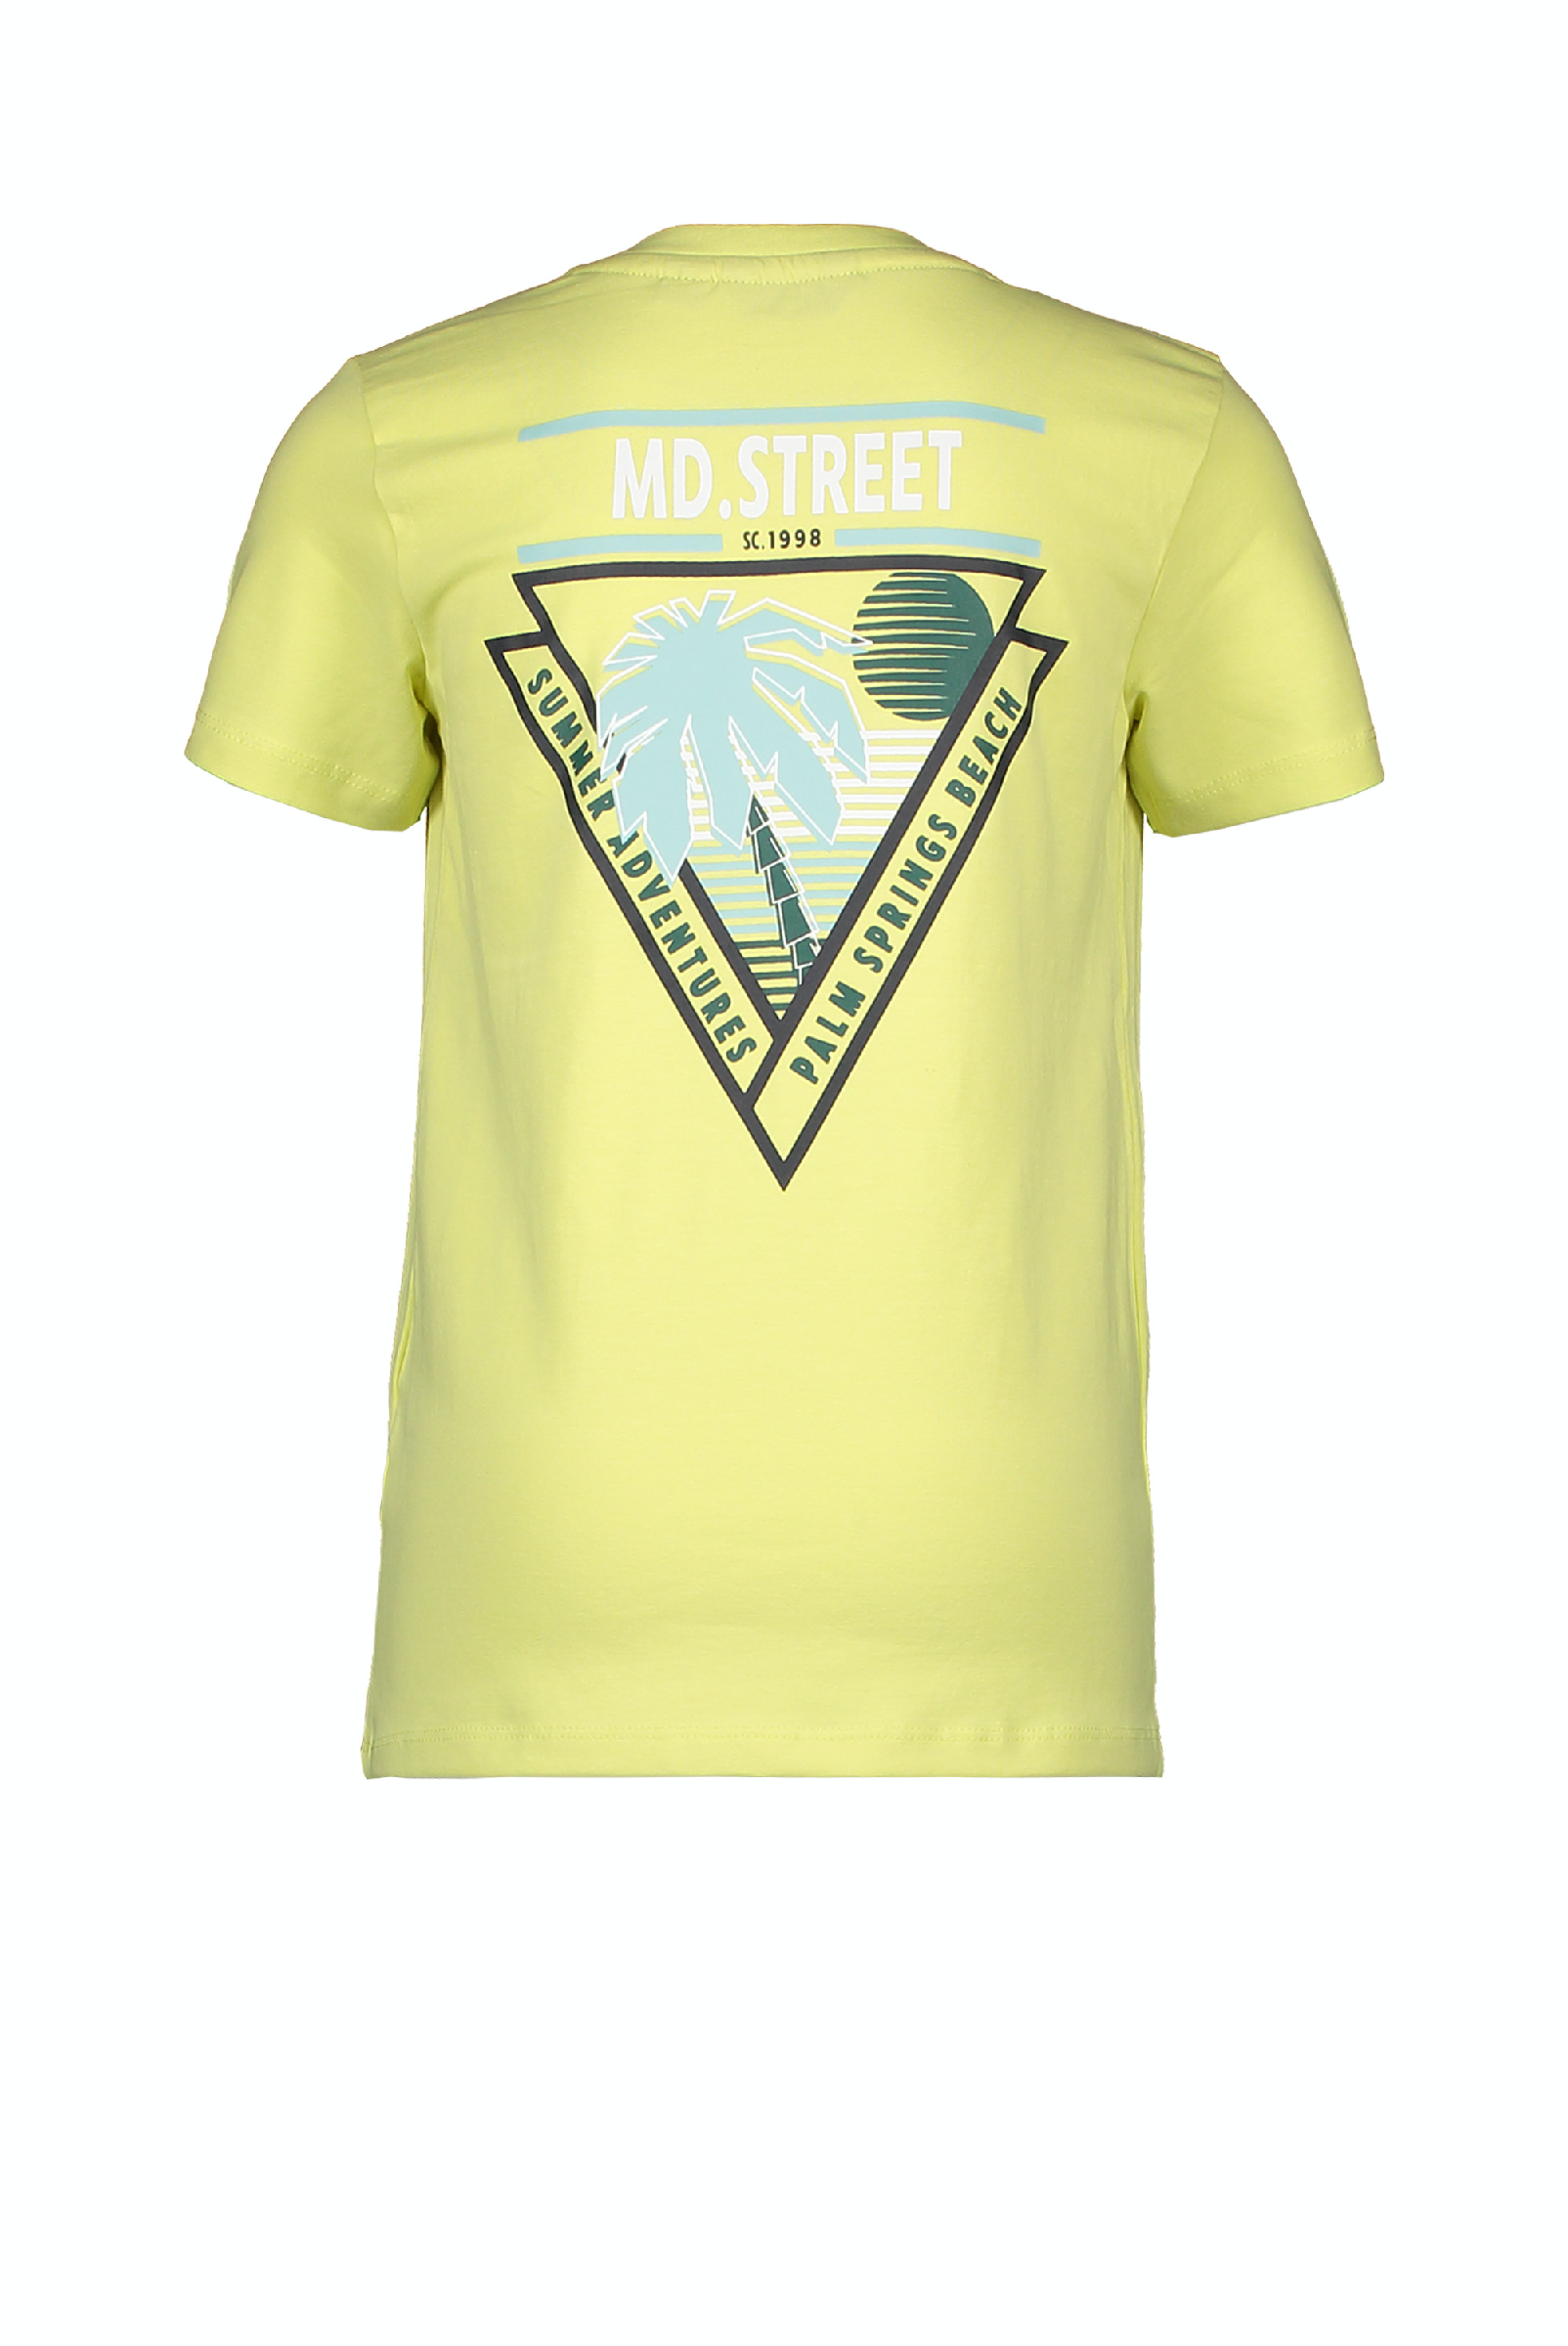 Jongens MT t-shirt chest&back print van Moodstreet in de kleur lime in maat 122, 128.